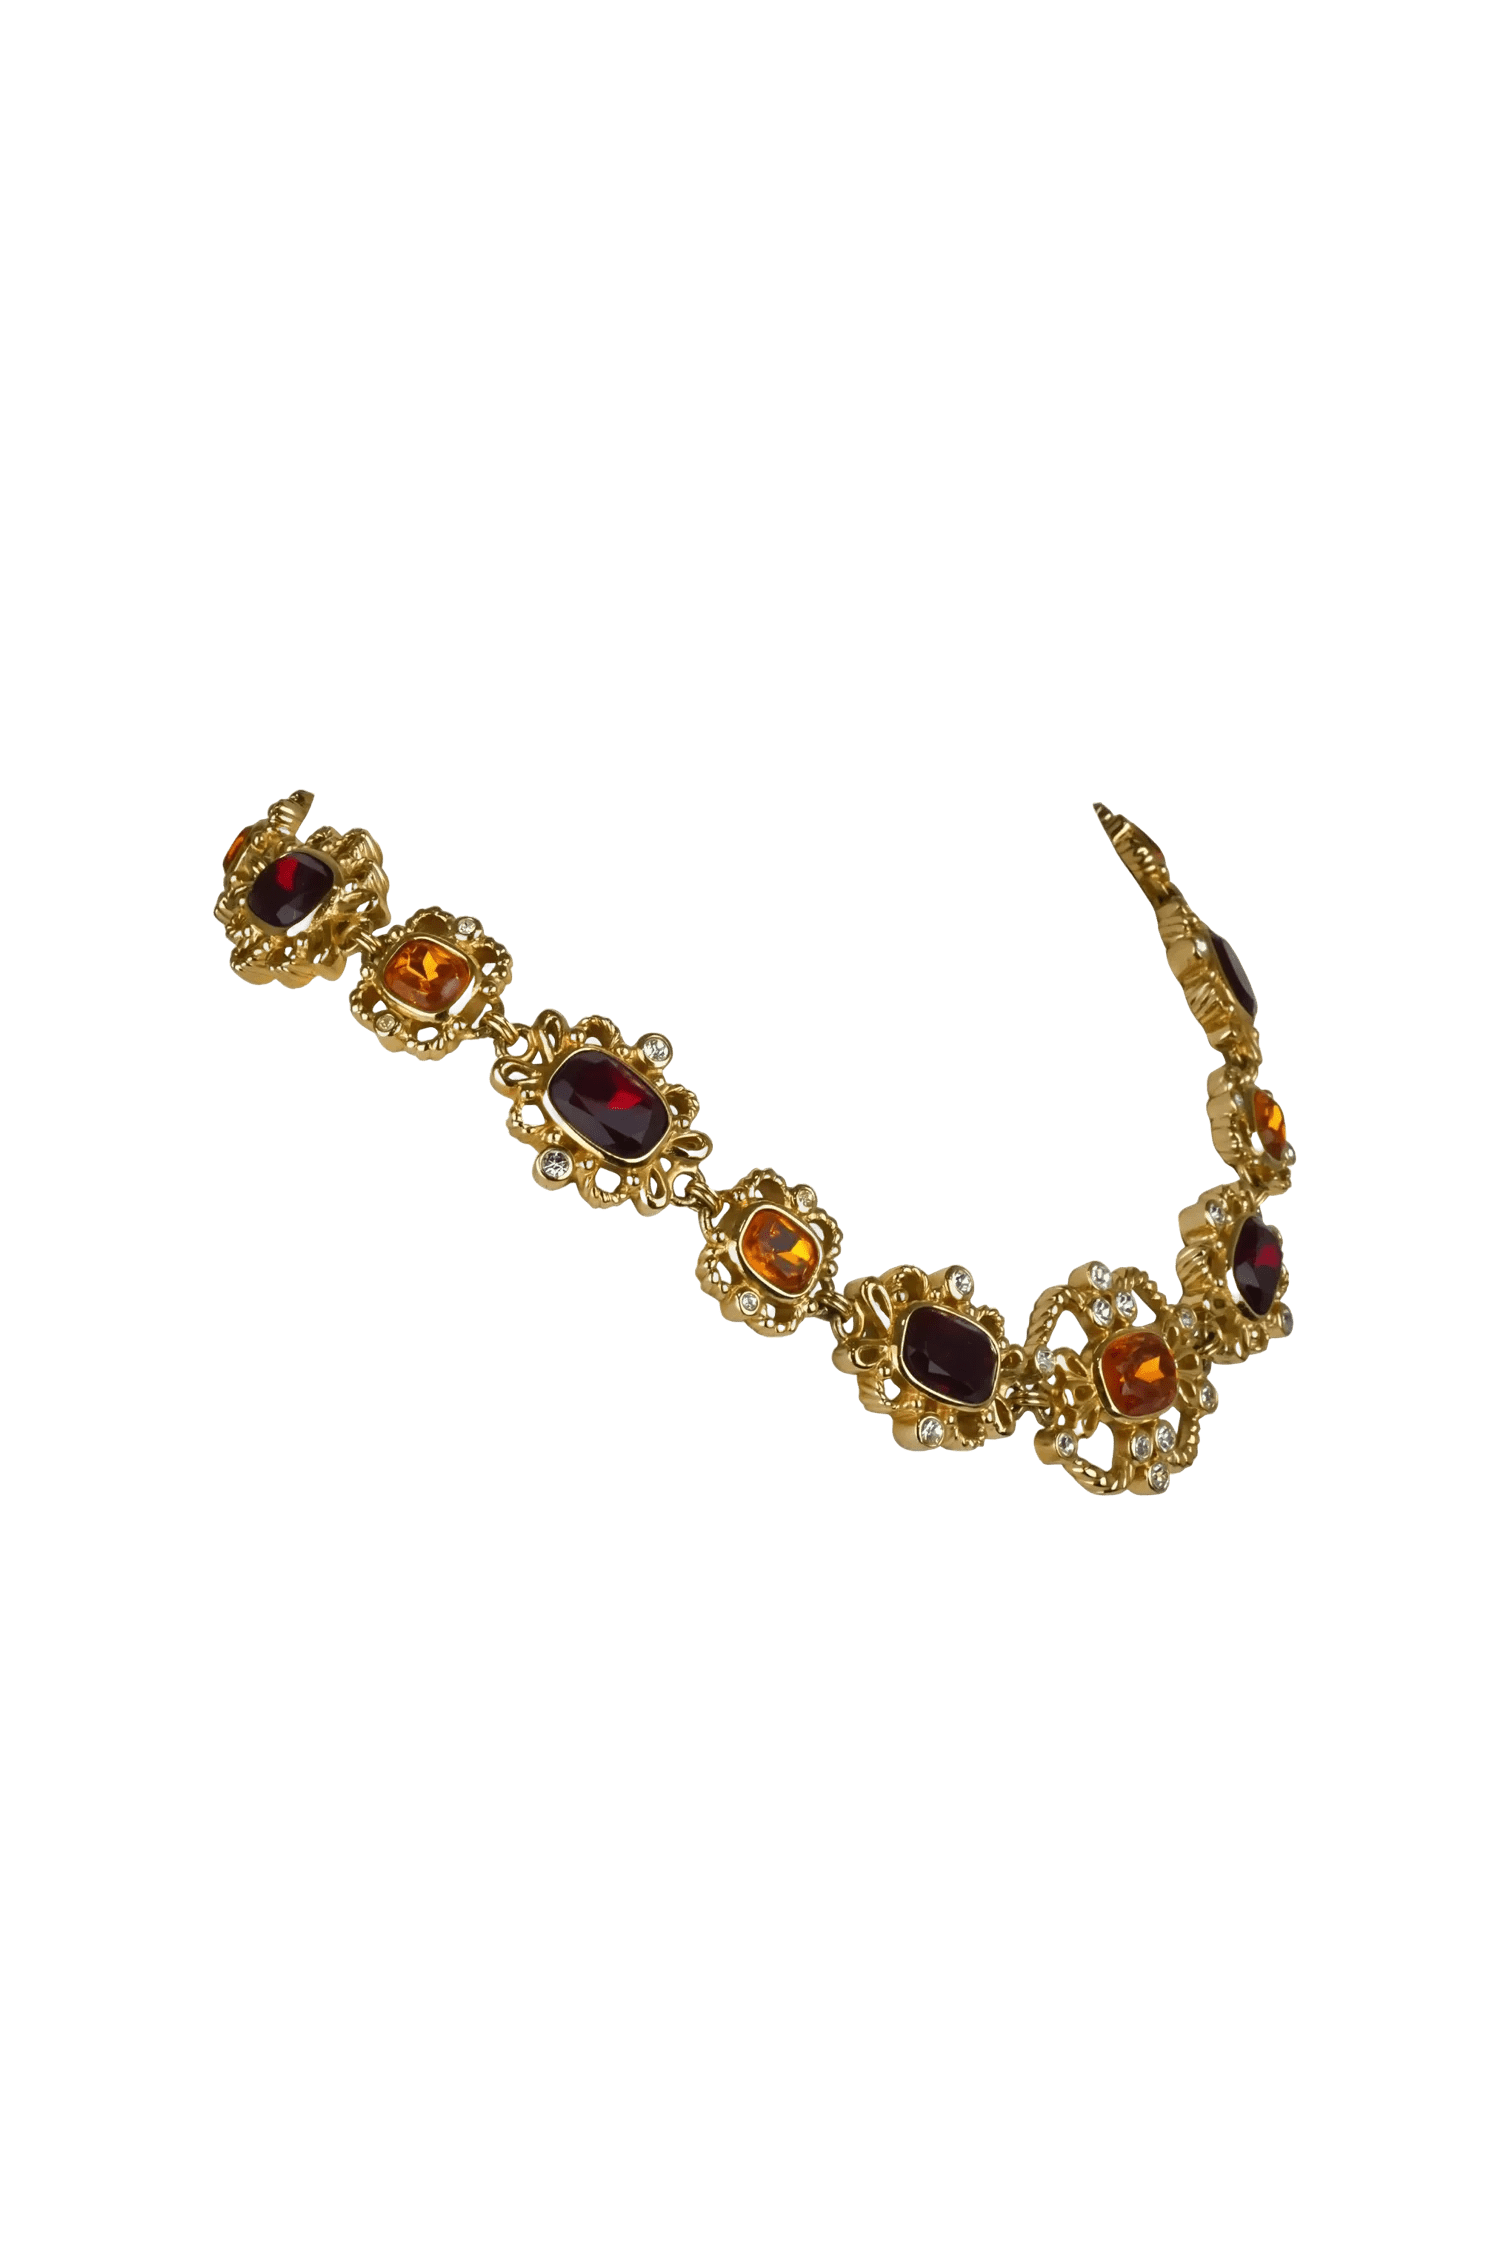 Christian Dior Rare Vintage Crystal Embellished Necklace 1960's-1970's